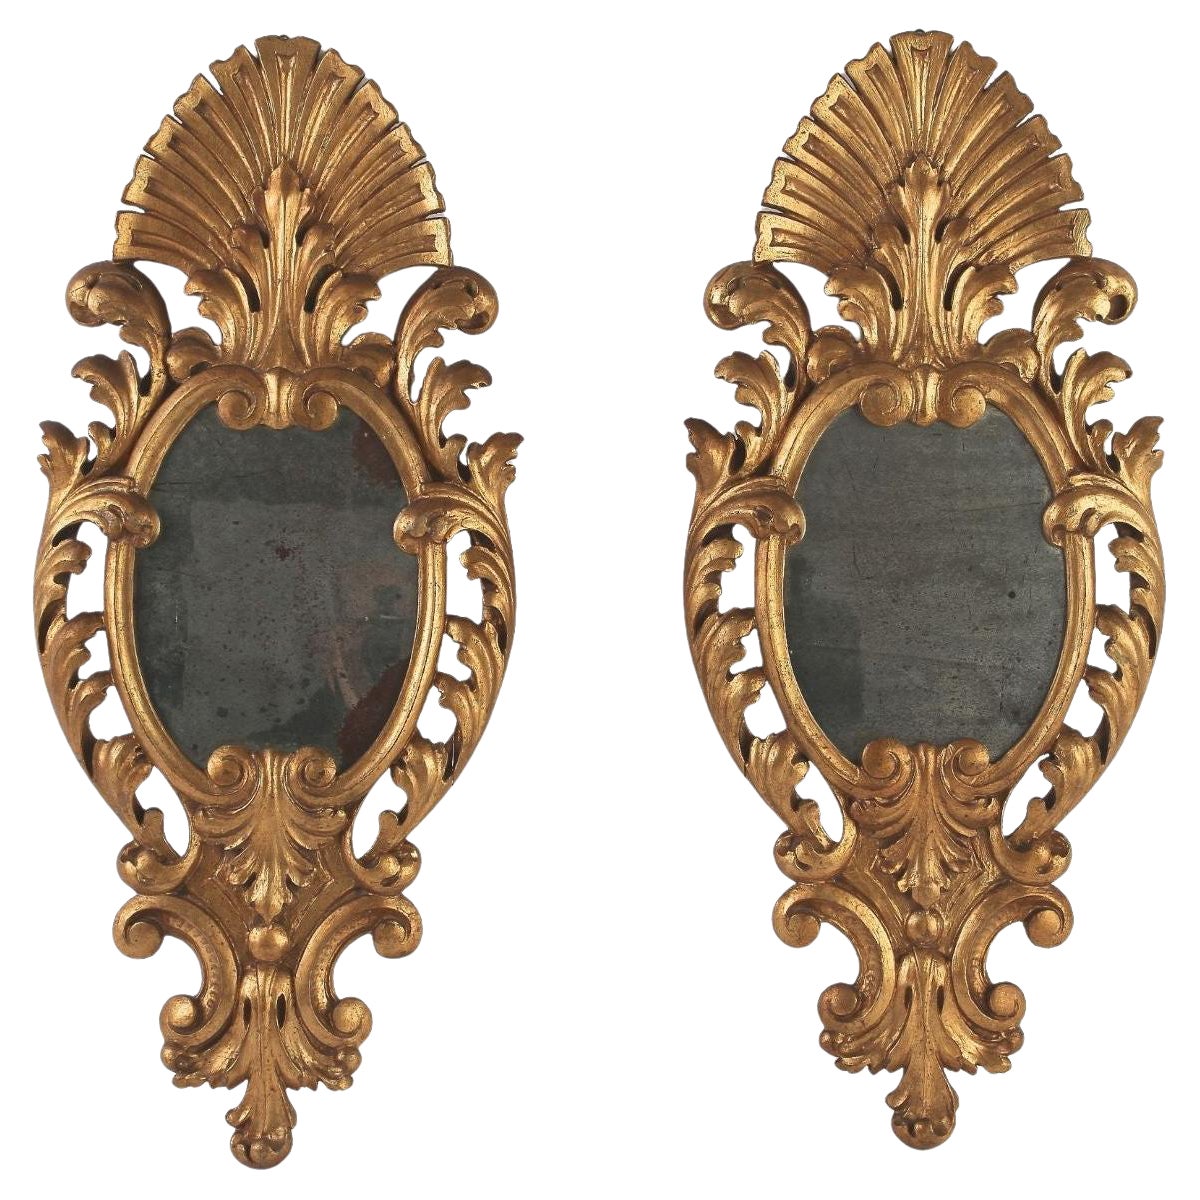 Paire de miroirs muraux dorés sculptés et sculptés à la main du 19ème siècle, Italie, vers 1850